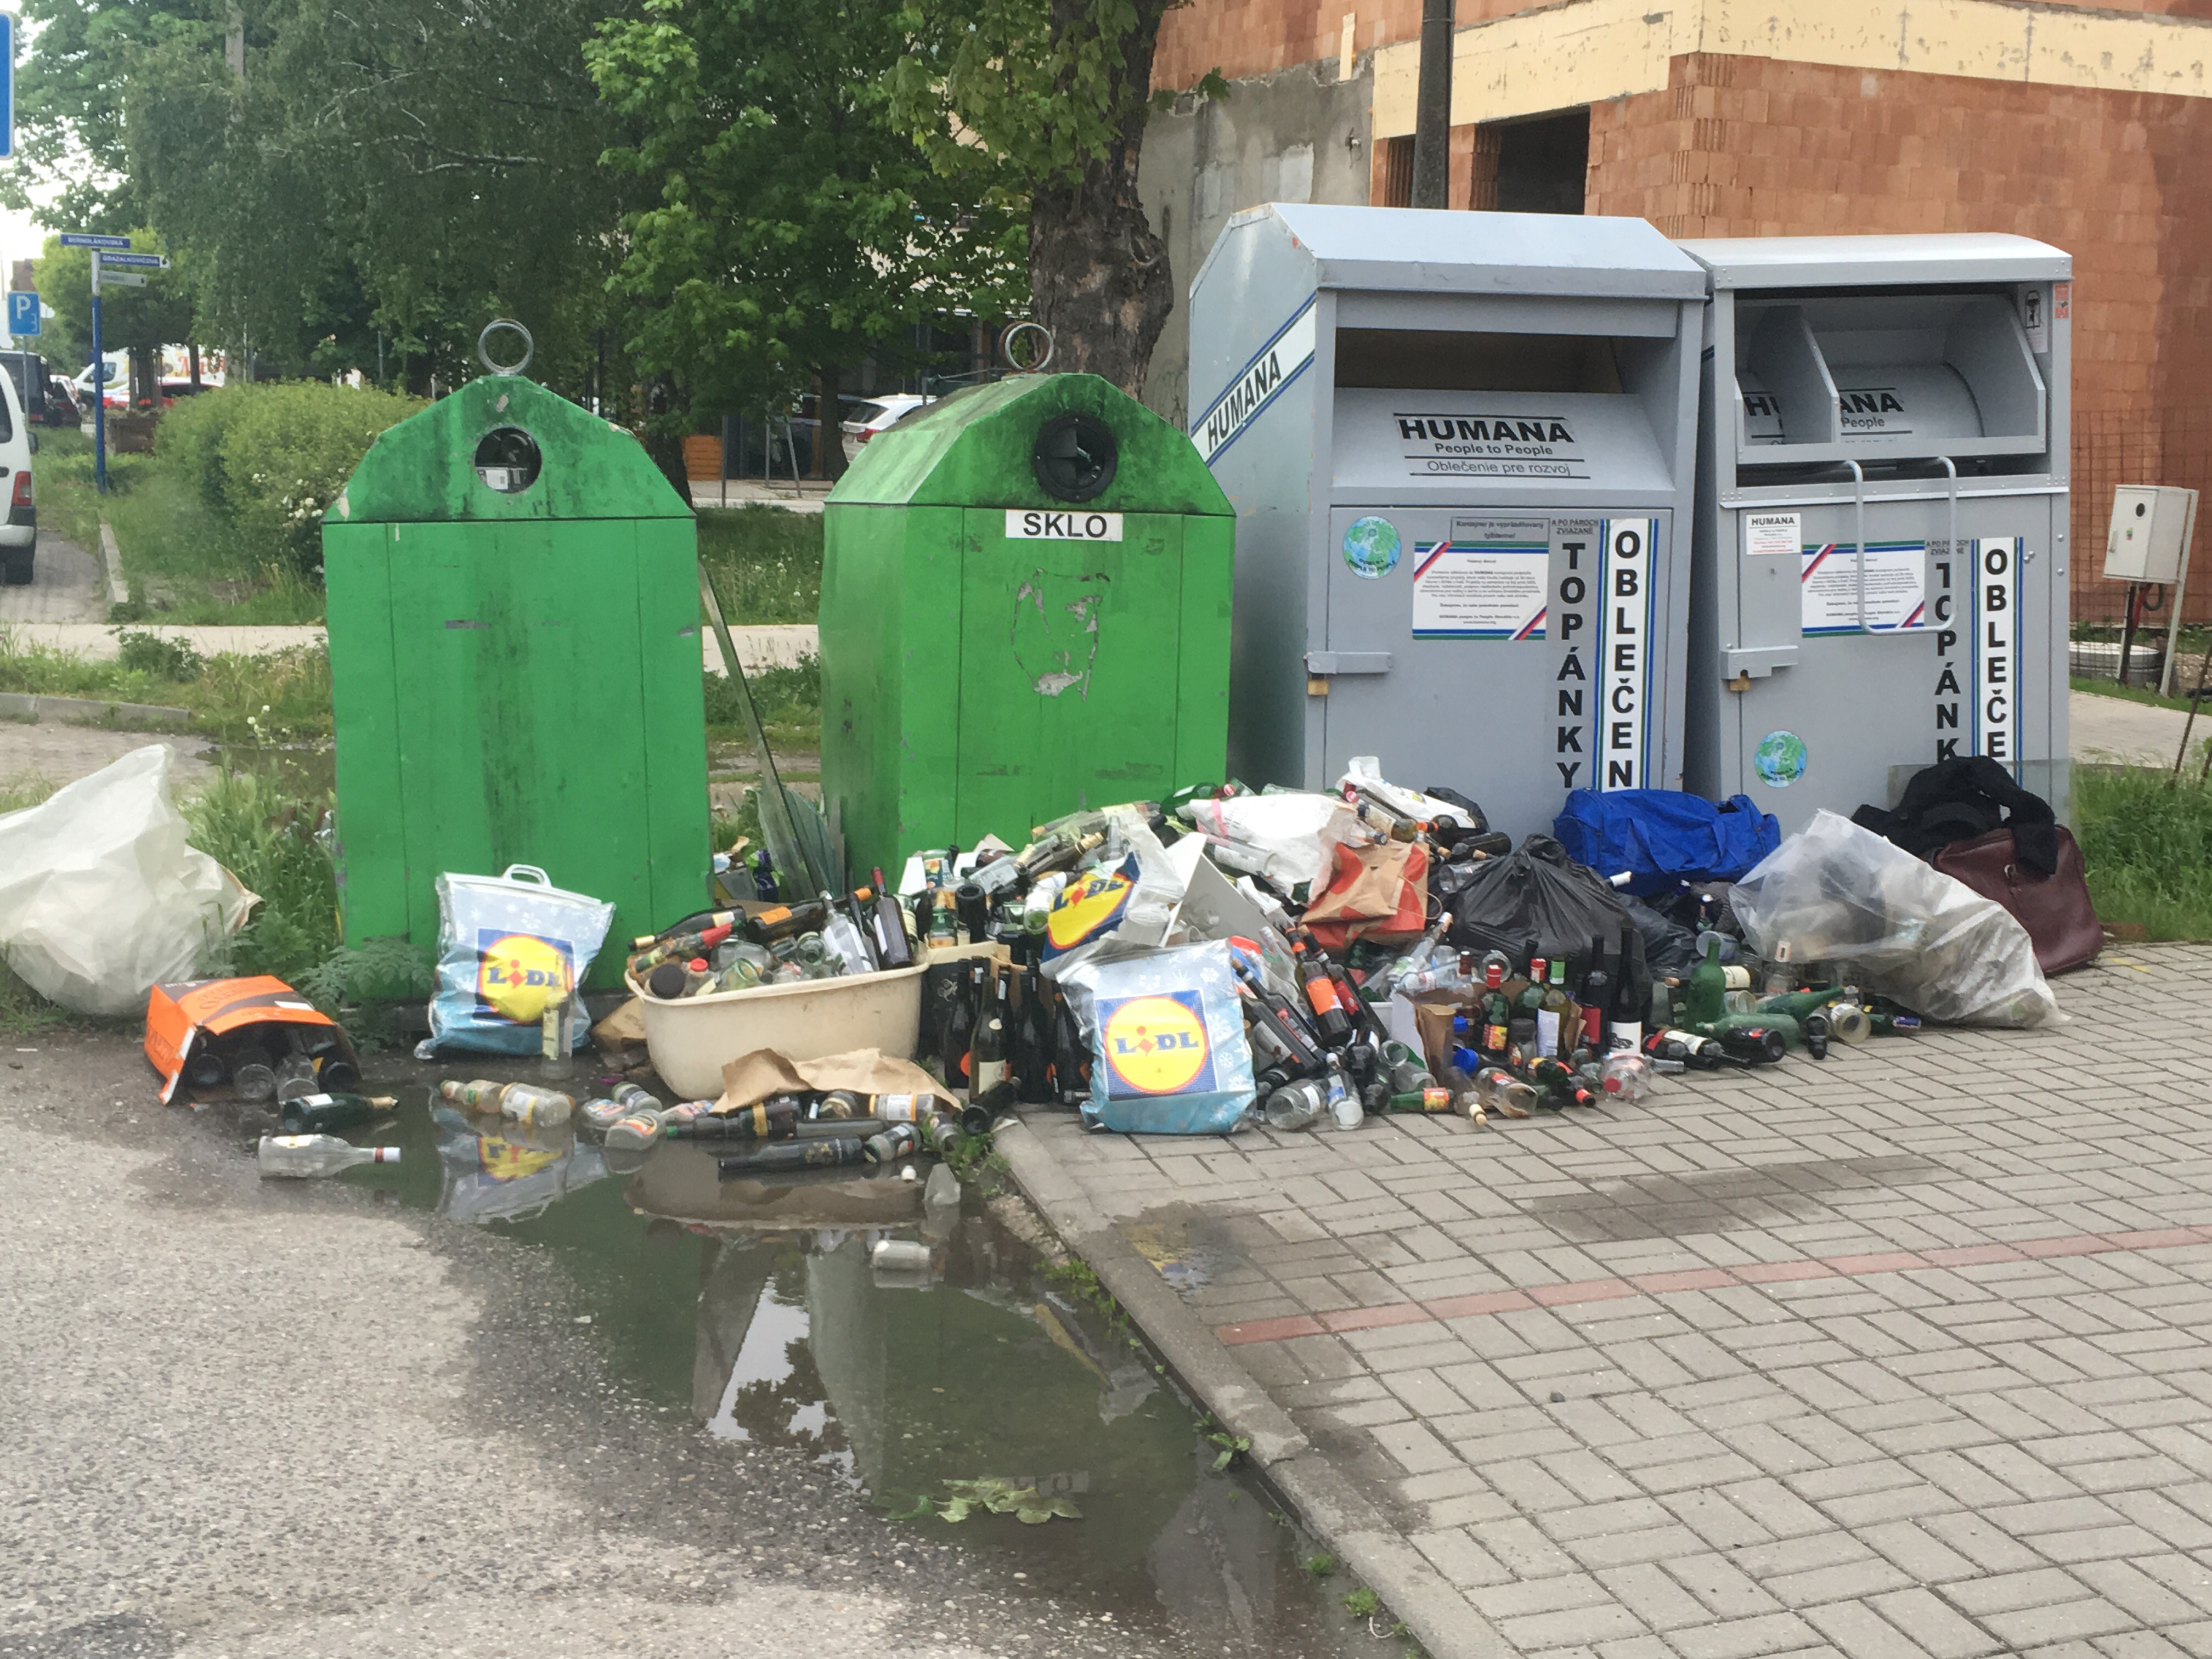 Bernolákovská-neporiadok a odpadky-neporiadok vo verejnom priestranstve, ,  Ivanka pri Dunaji | Odkazprestarostu.sk